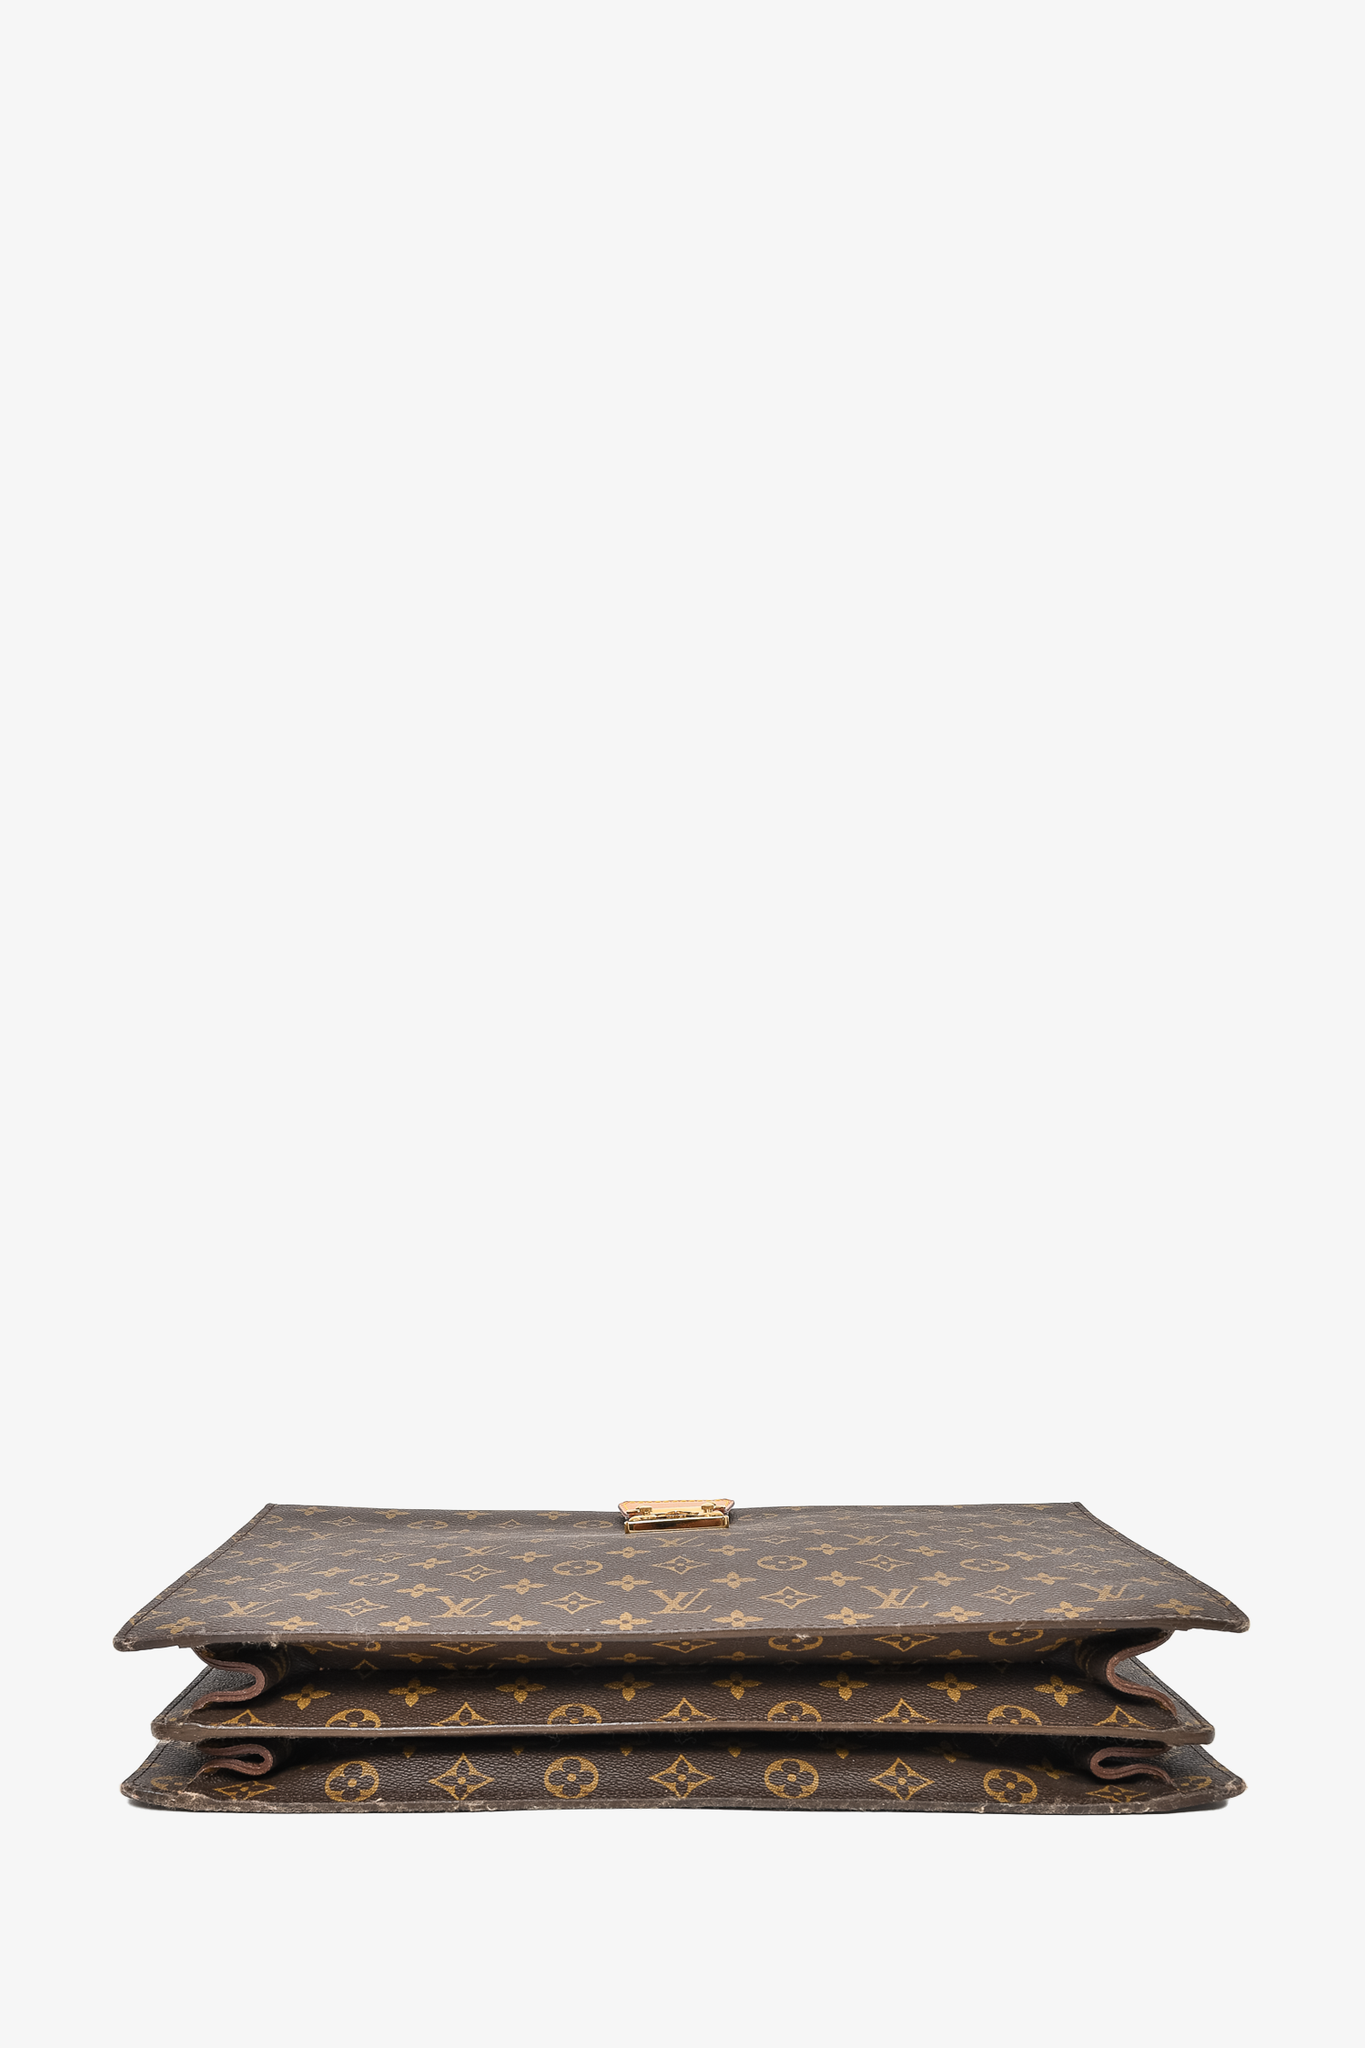 Louis Vuitton Monogram SERVIETTE FERMOIR BUSINESS Briefcase